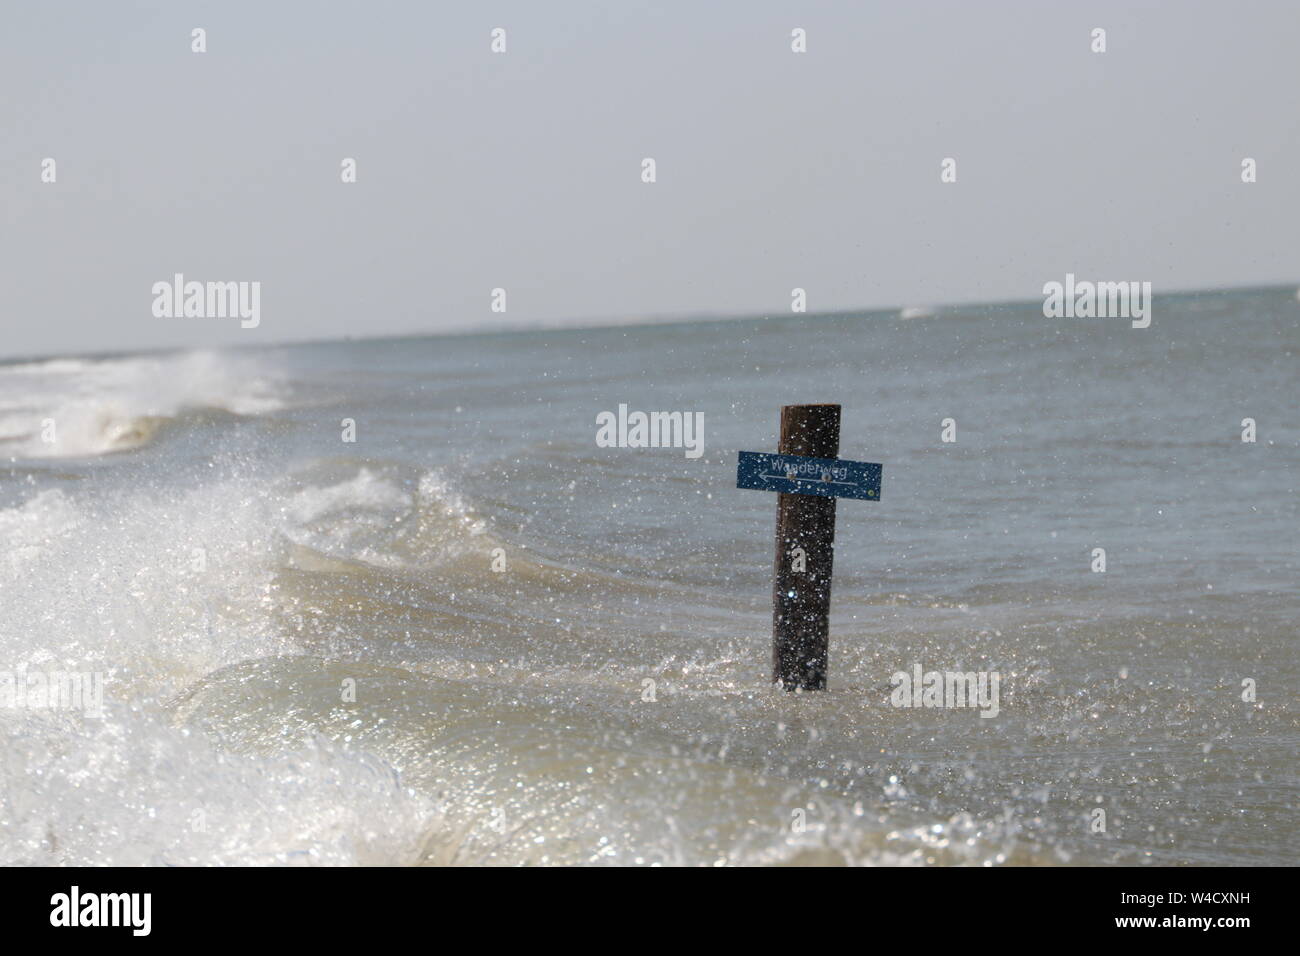 guide sign at Borkum beach in splashy water Stock Photo